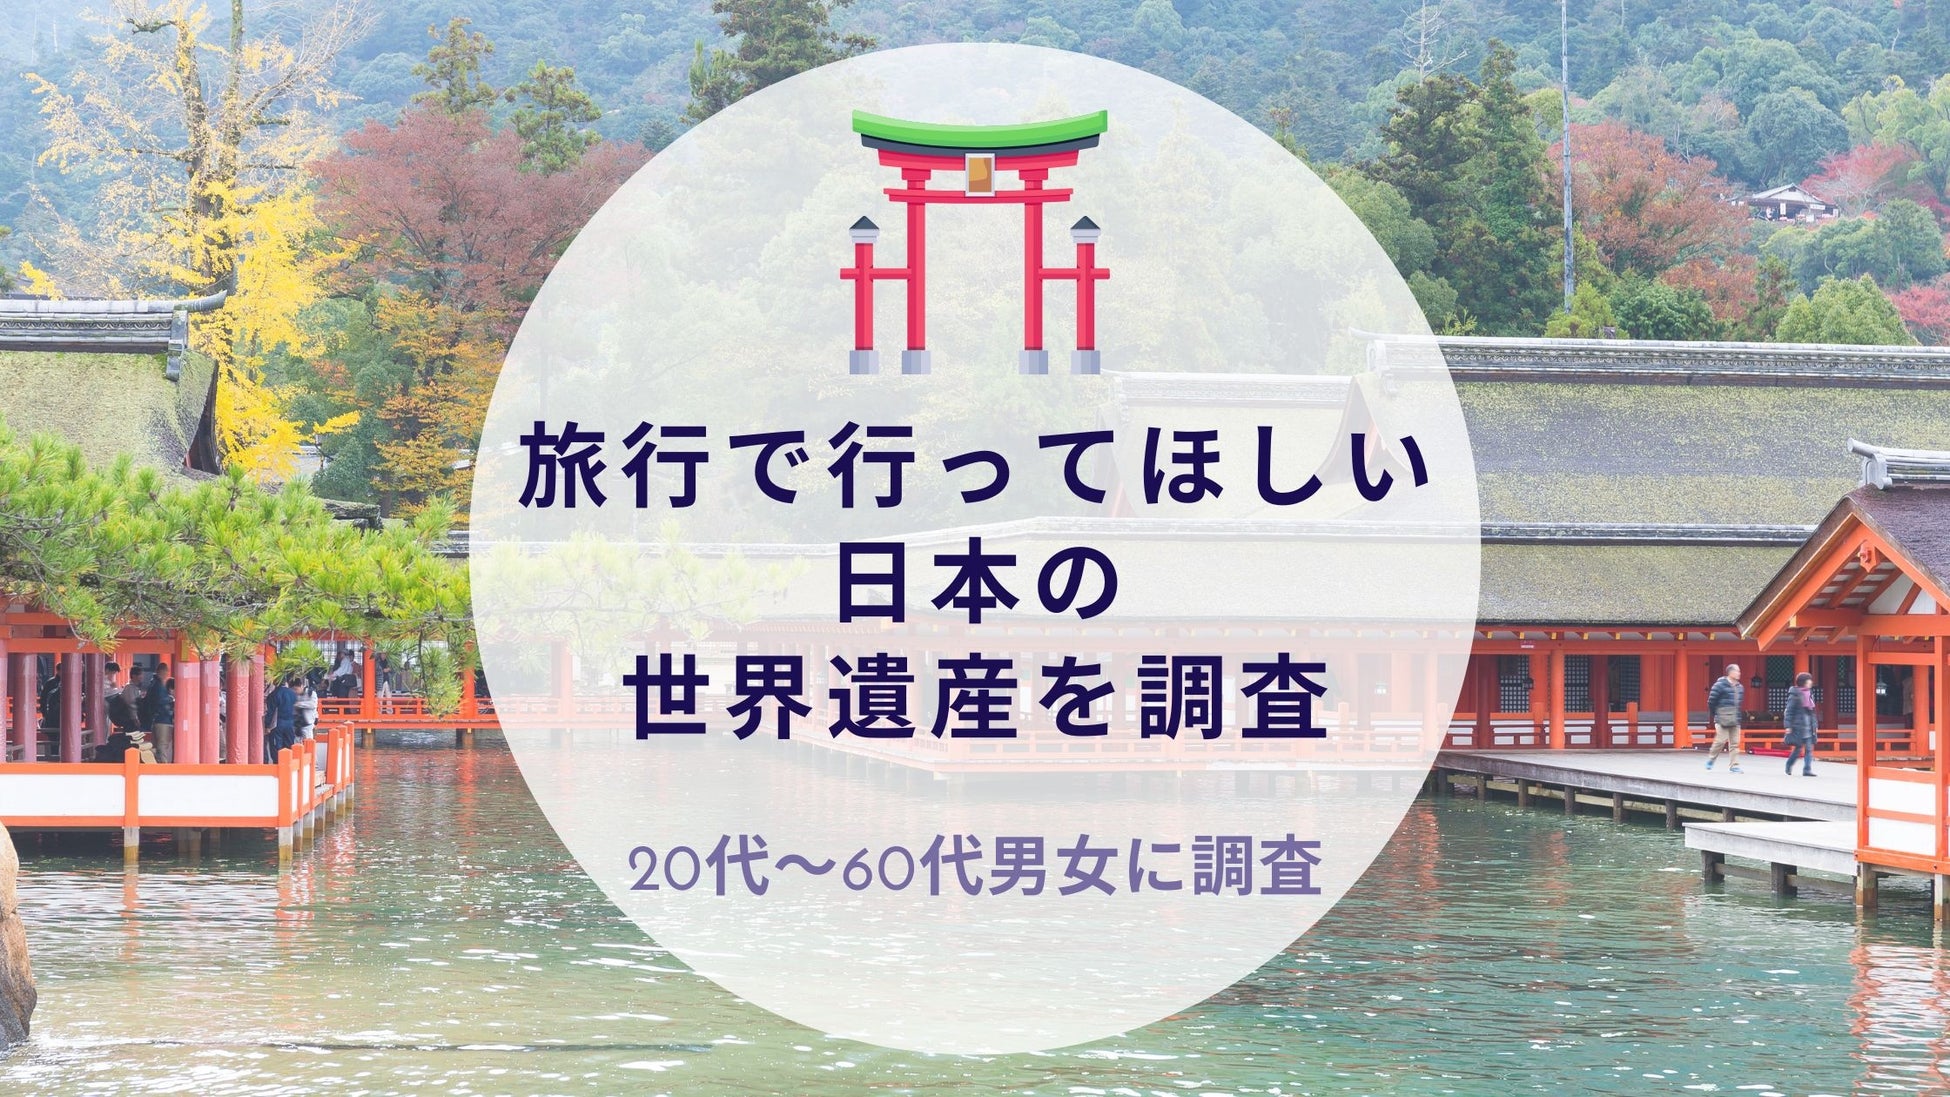 インバウンド需要が再び高まってきている現在の日本。一大観光地である北海道発の企業として、民泊市場におけるポジションを確立したい！